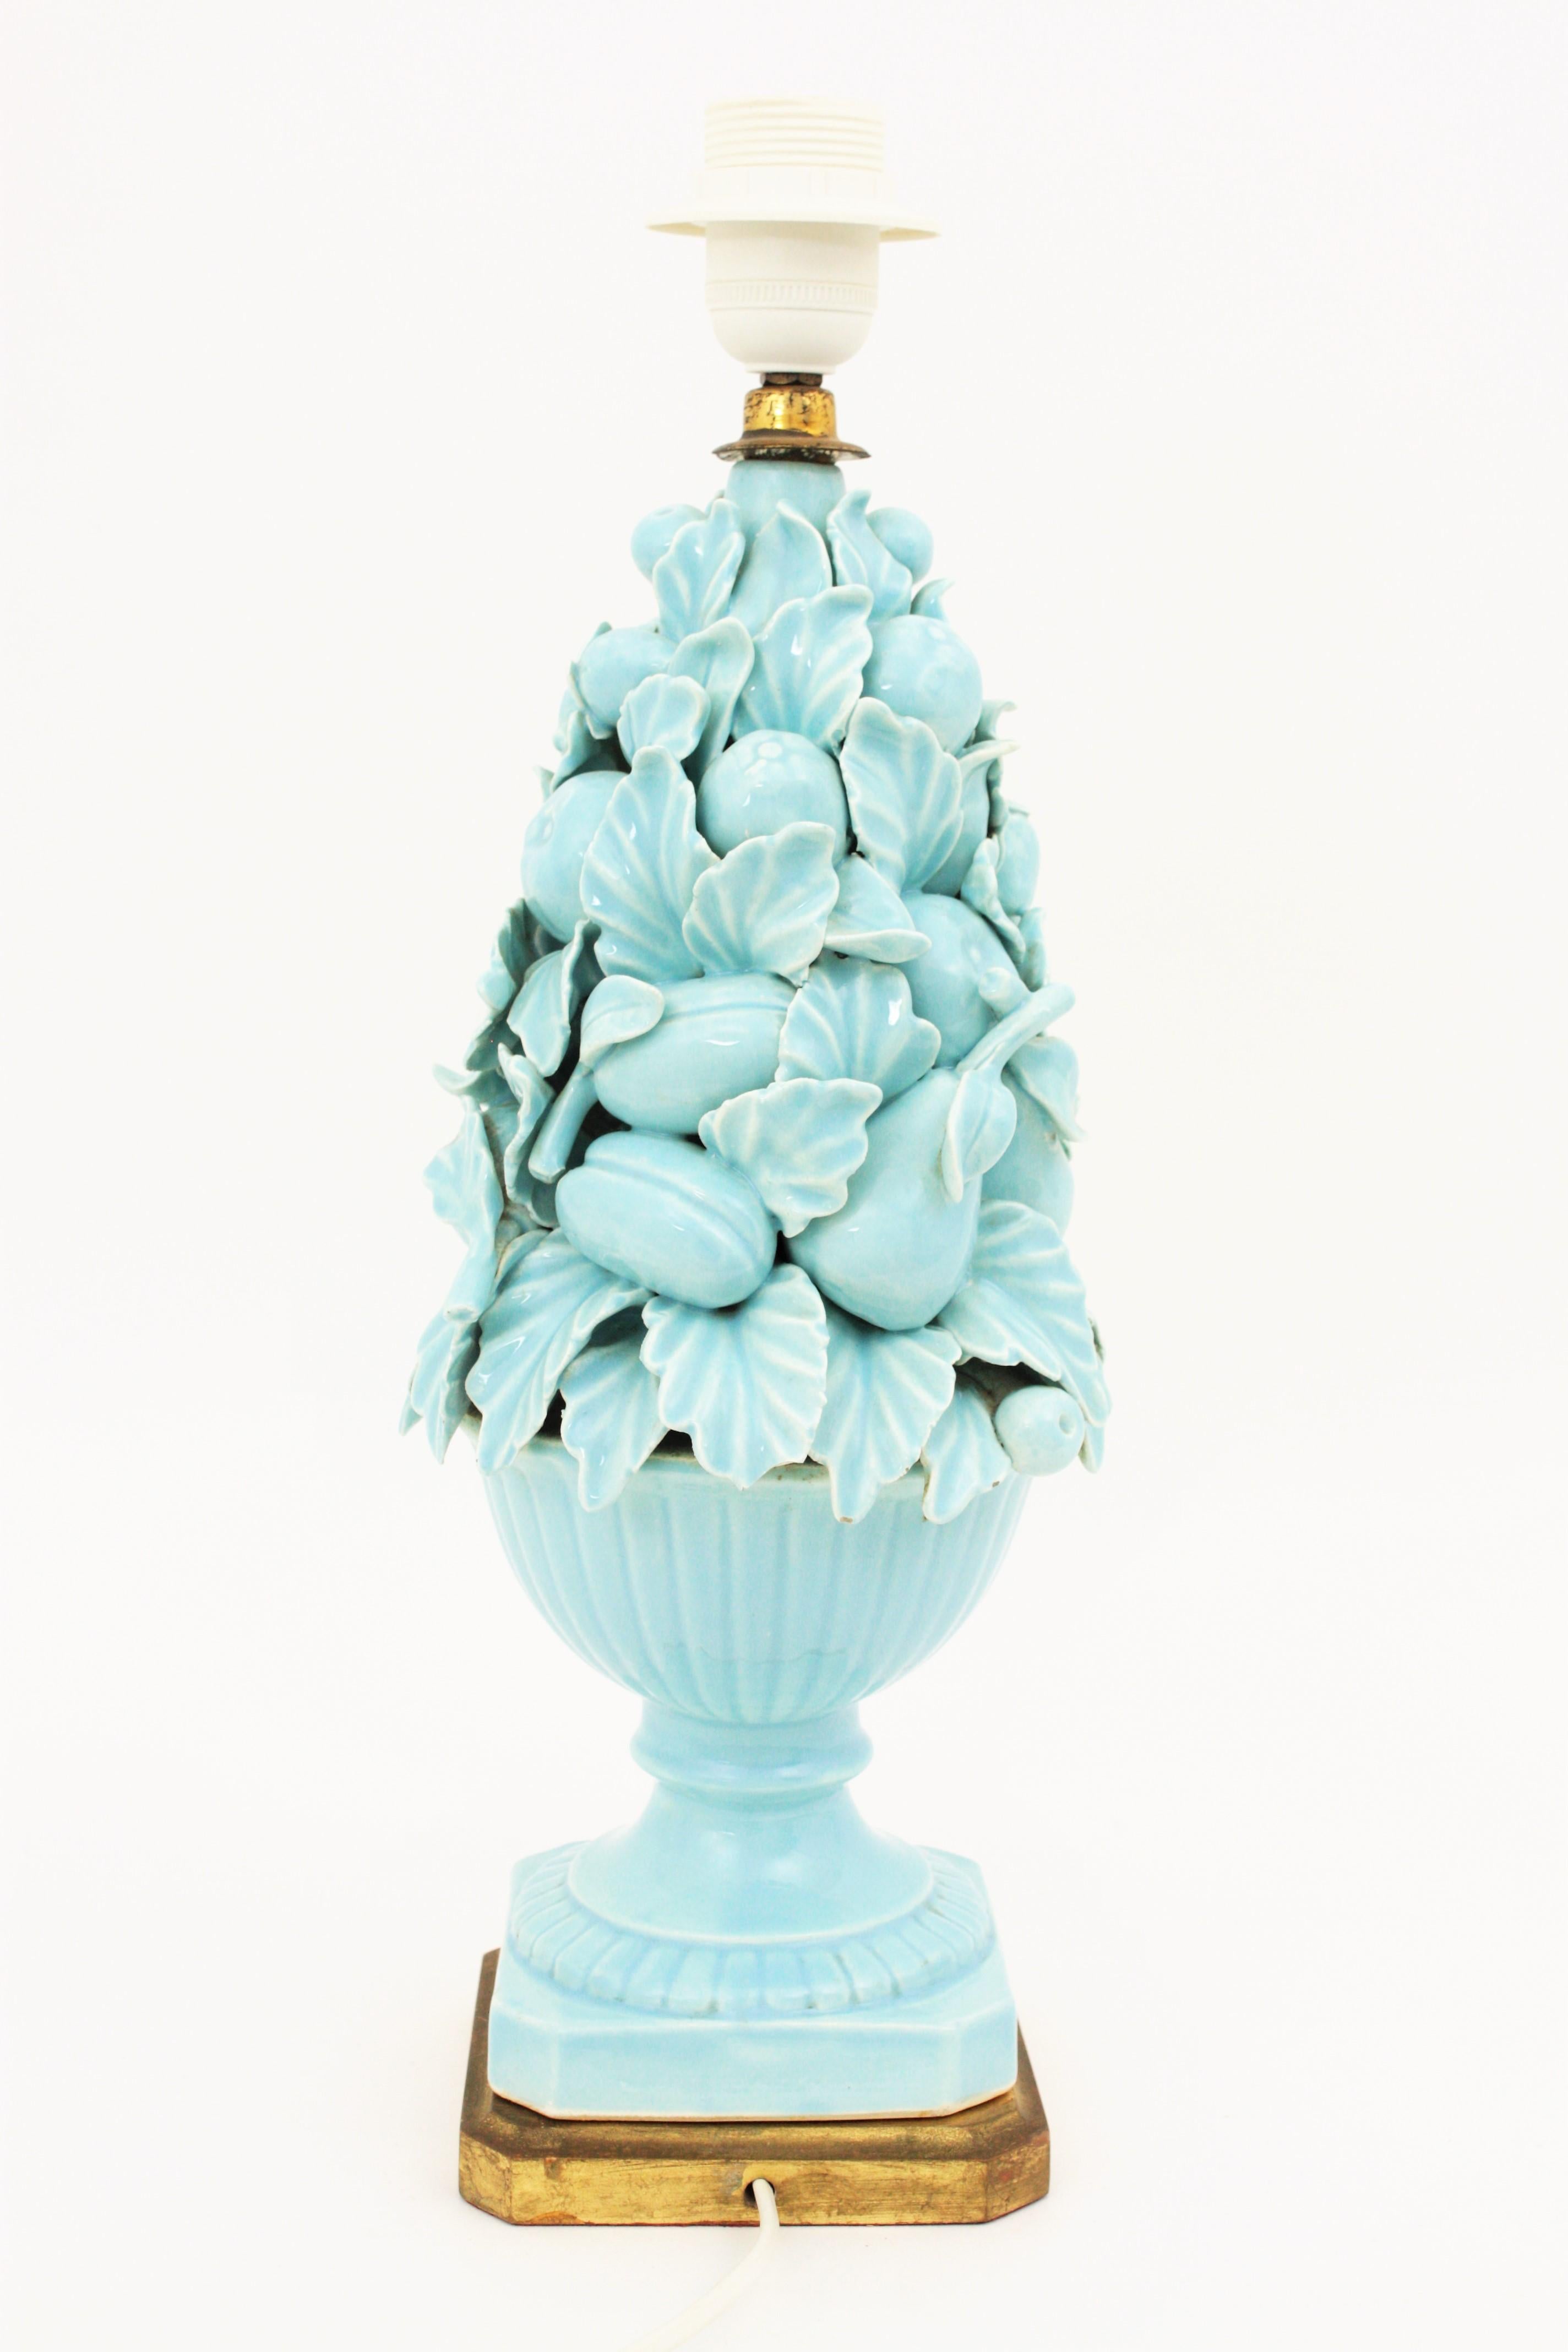 Spanish 1960s Majolica Blue Glazed Manises Ceramic Fruit Table Lamp 1